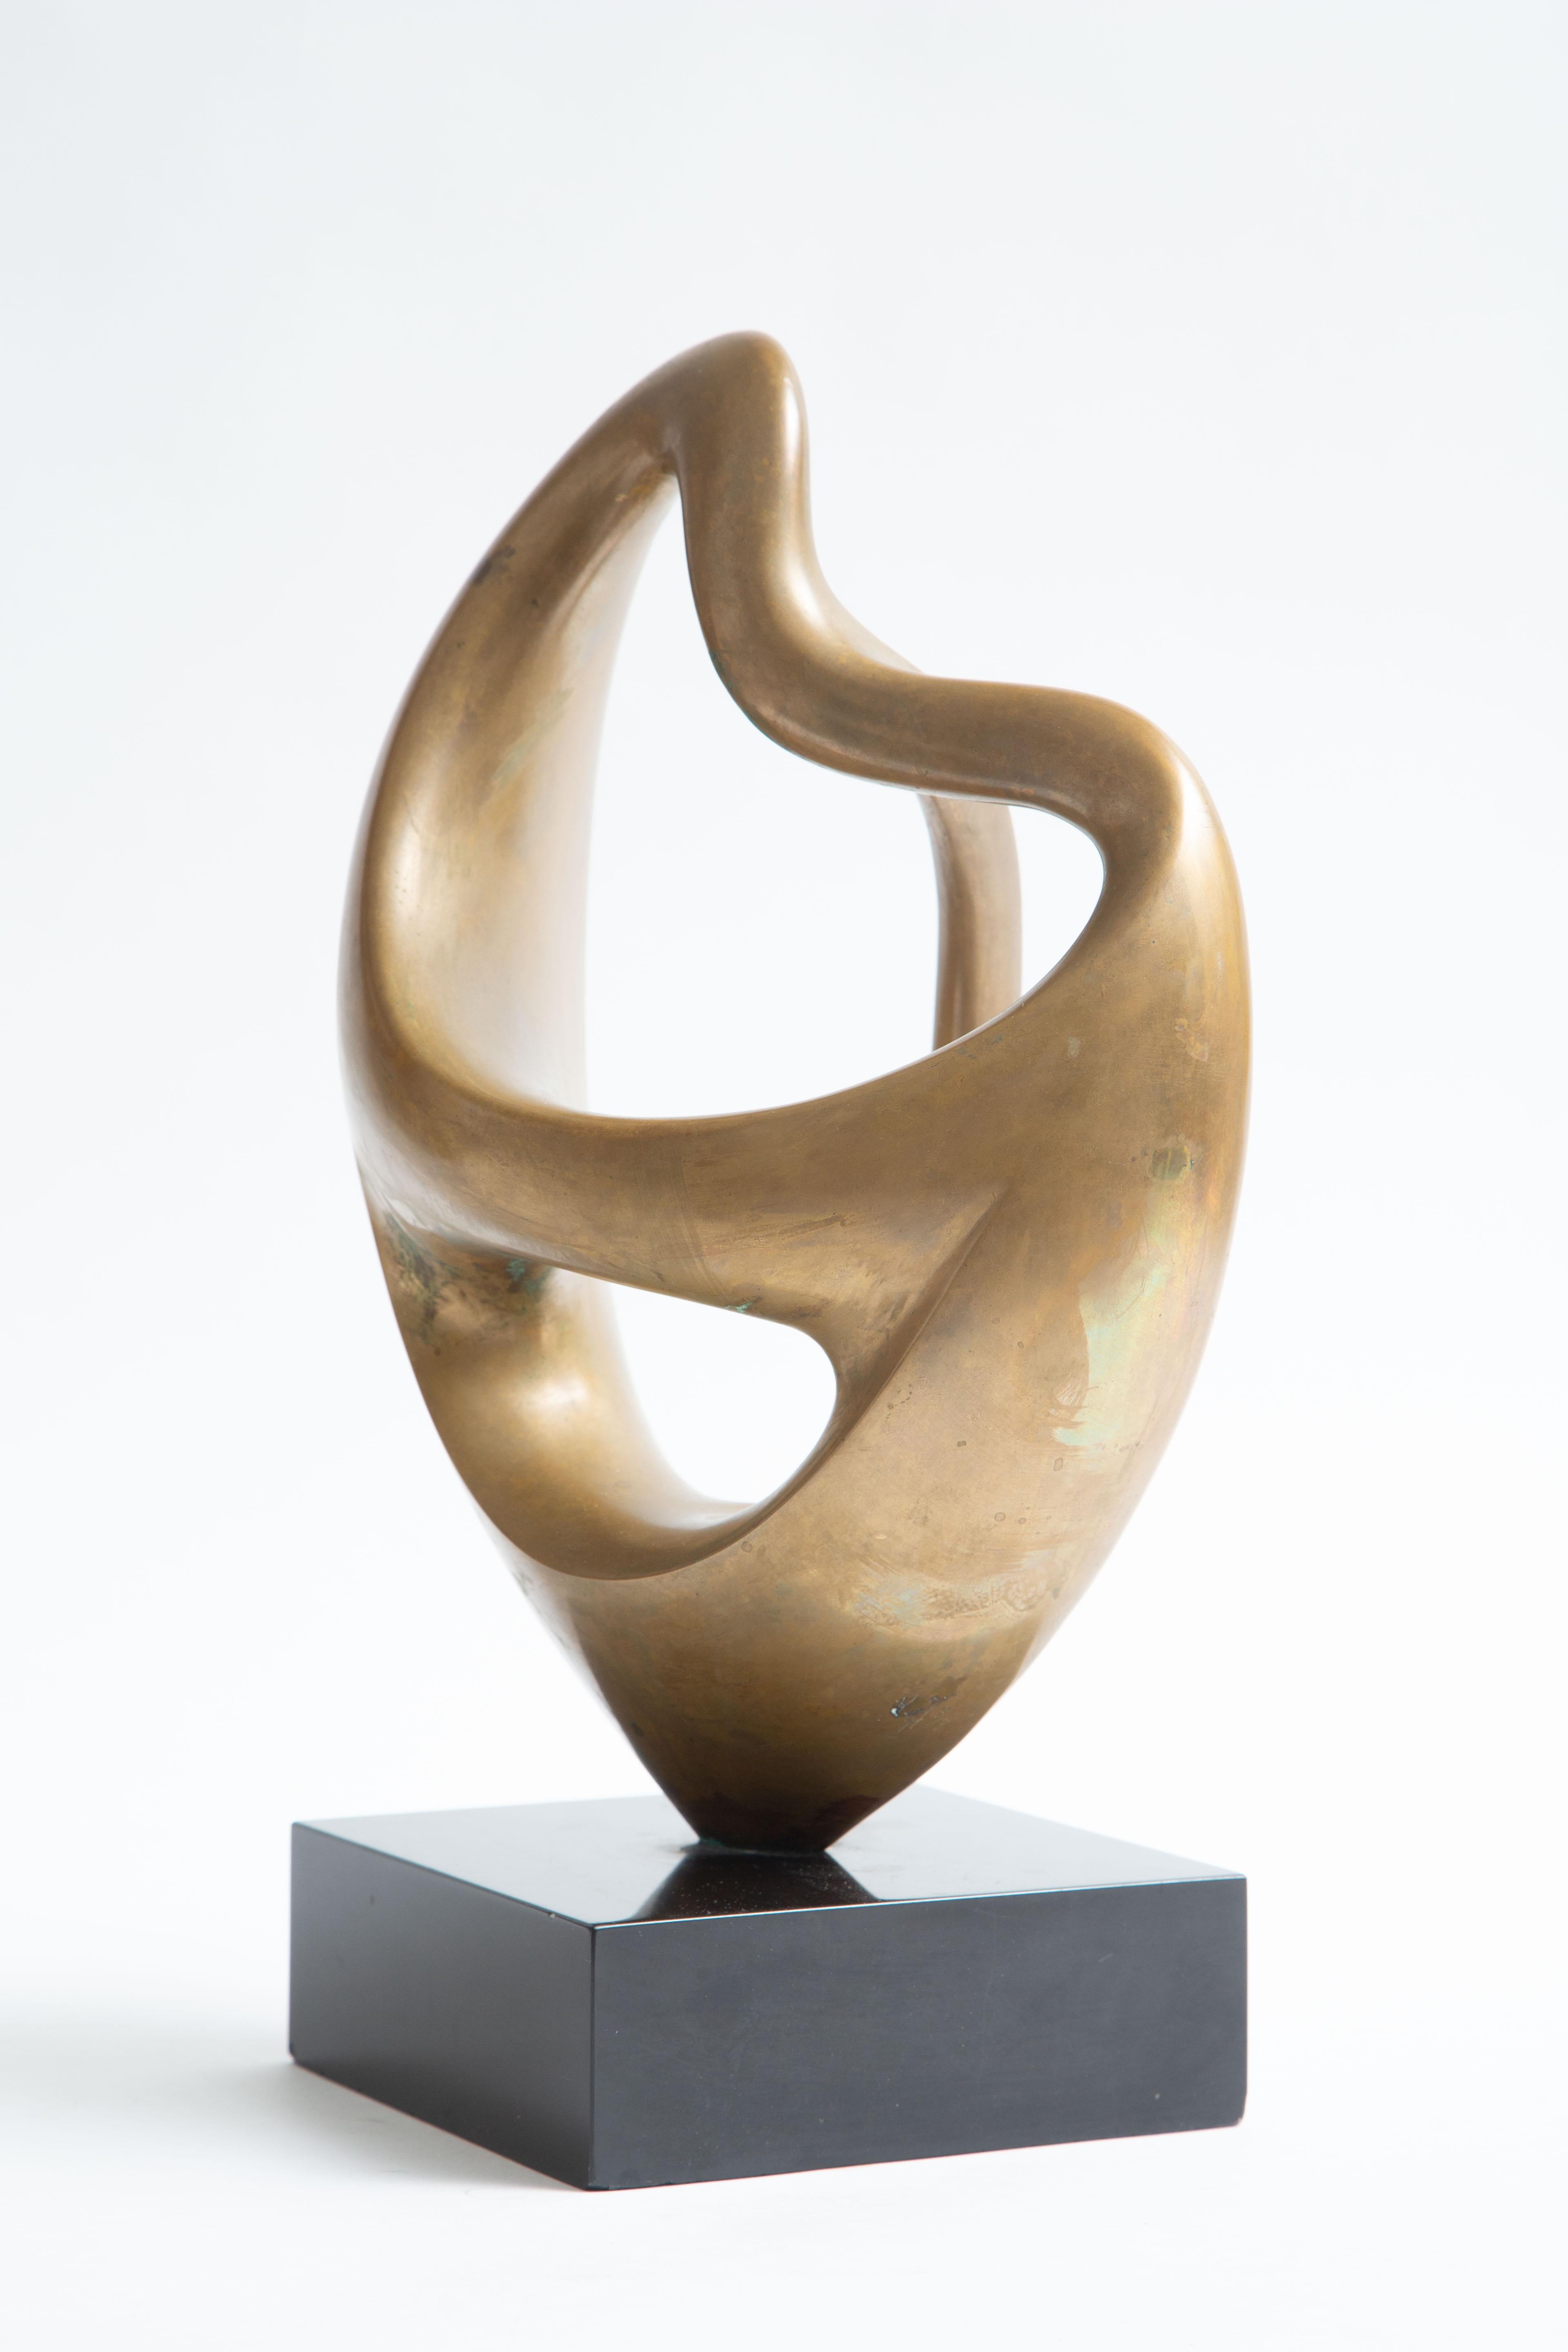 Canadian Antonio Grediaga Kieff Sculpture For Sale